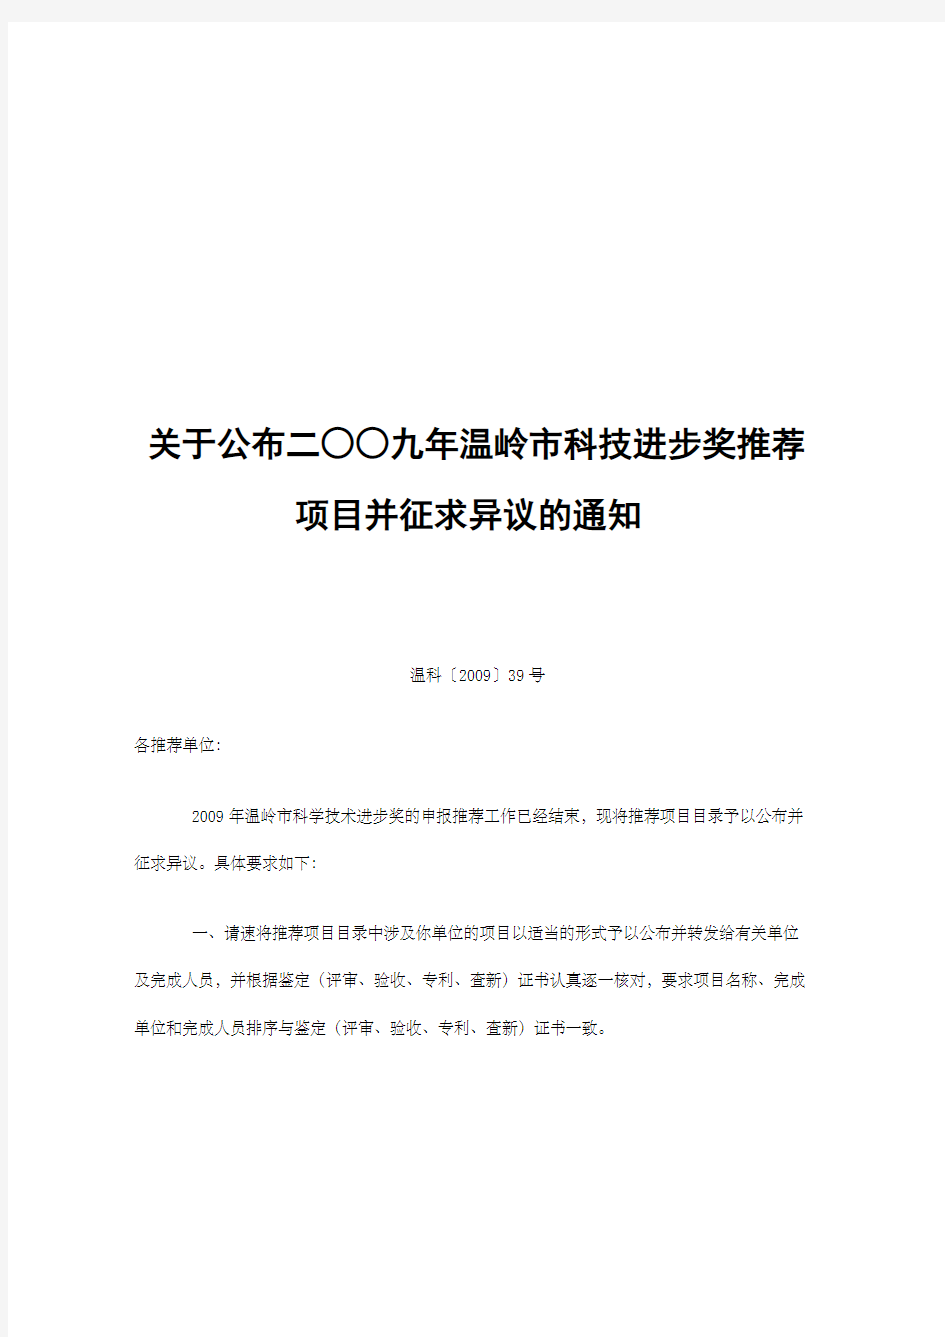 台州市科技计划项目申请表